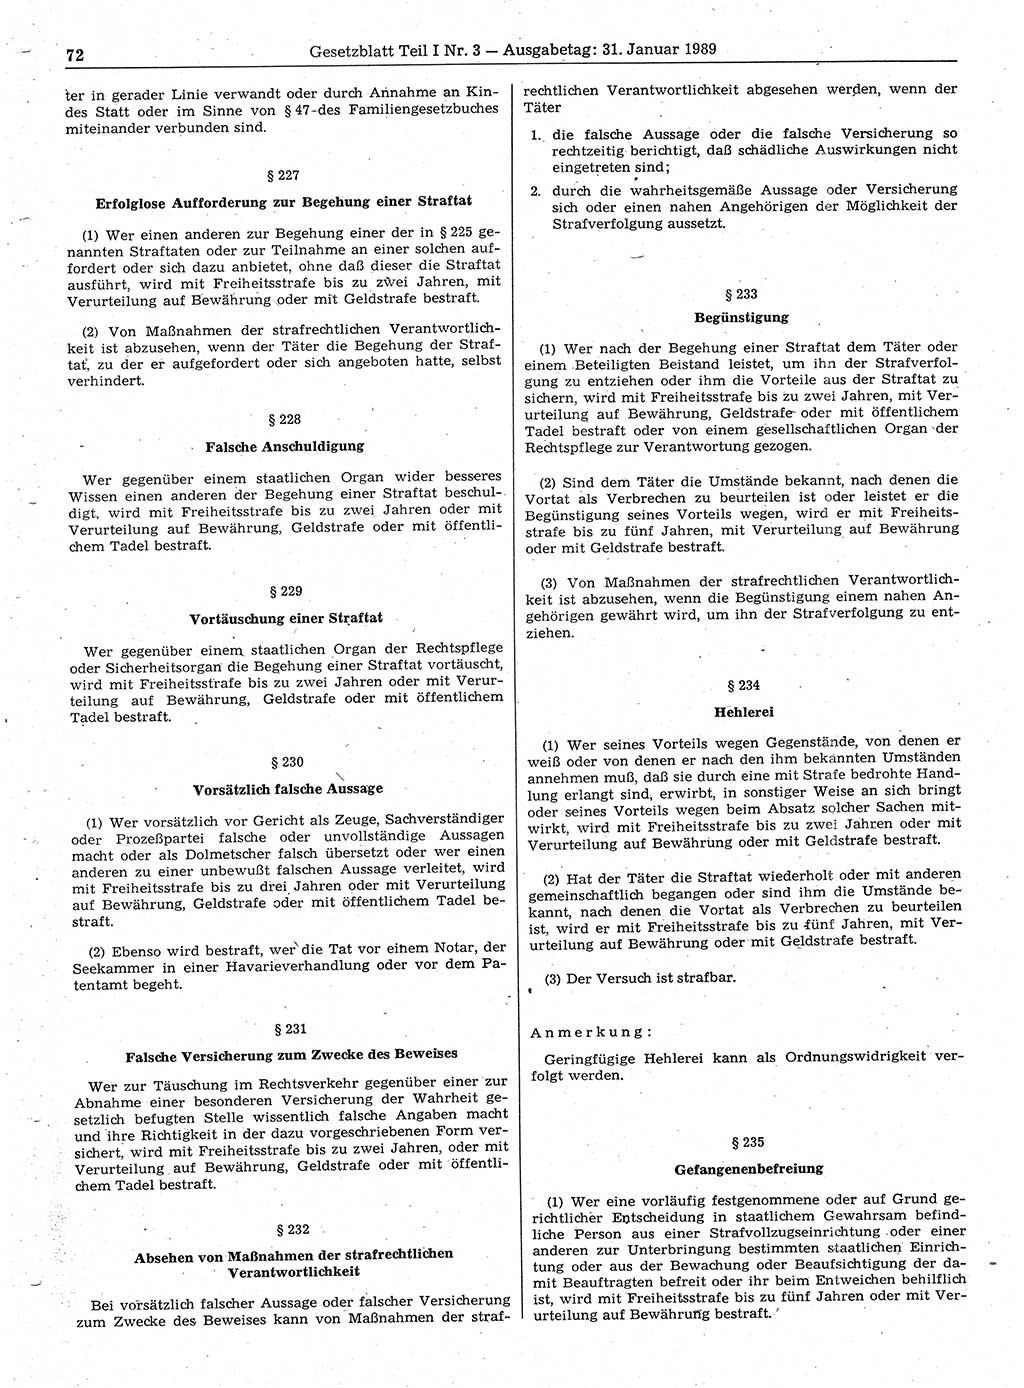 Gesetzblatt (GBl.) der Deutschen Demokratischen Republik (DDR) Teil Ⅰ 1989, Seite 72 (GBl. DDR Ⅰ 1989, S. 72)